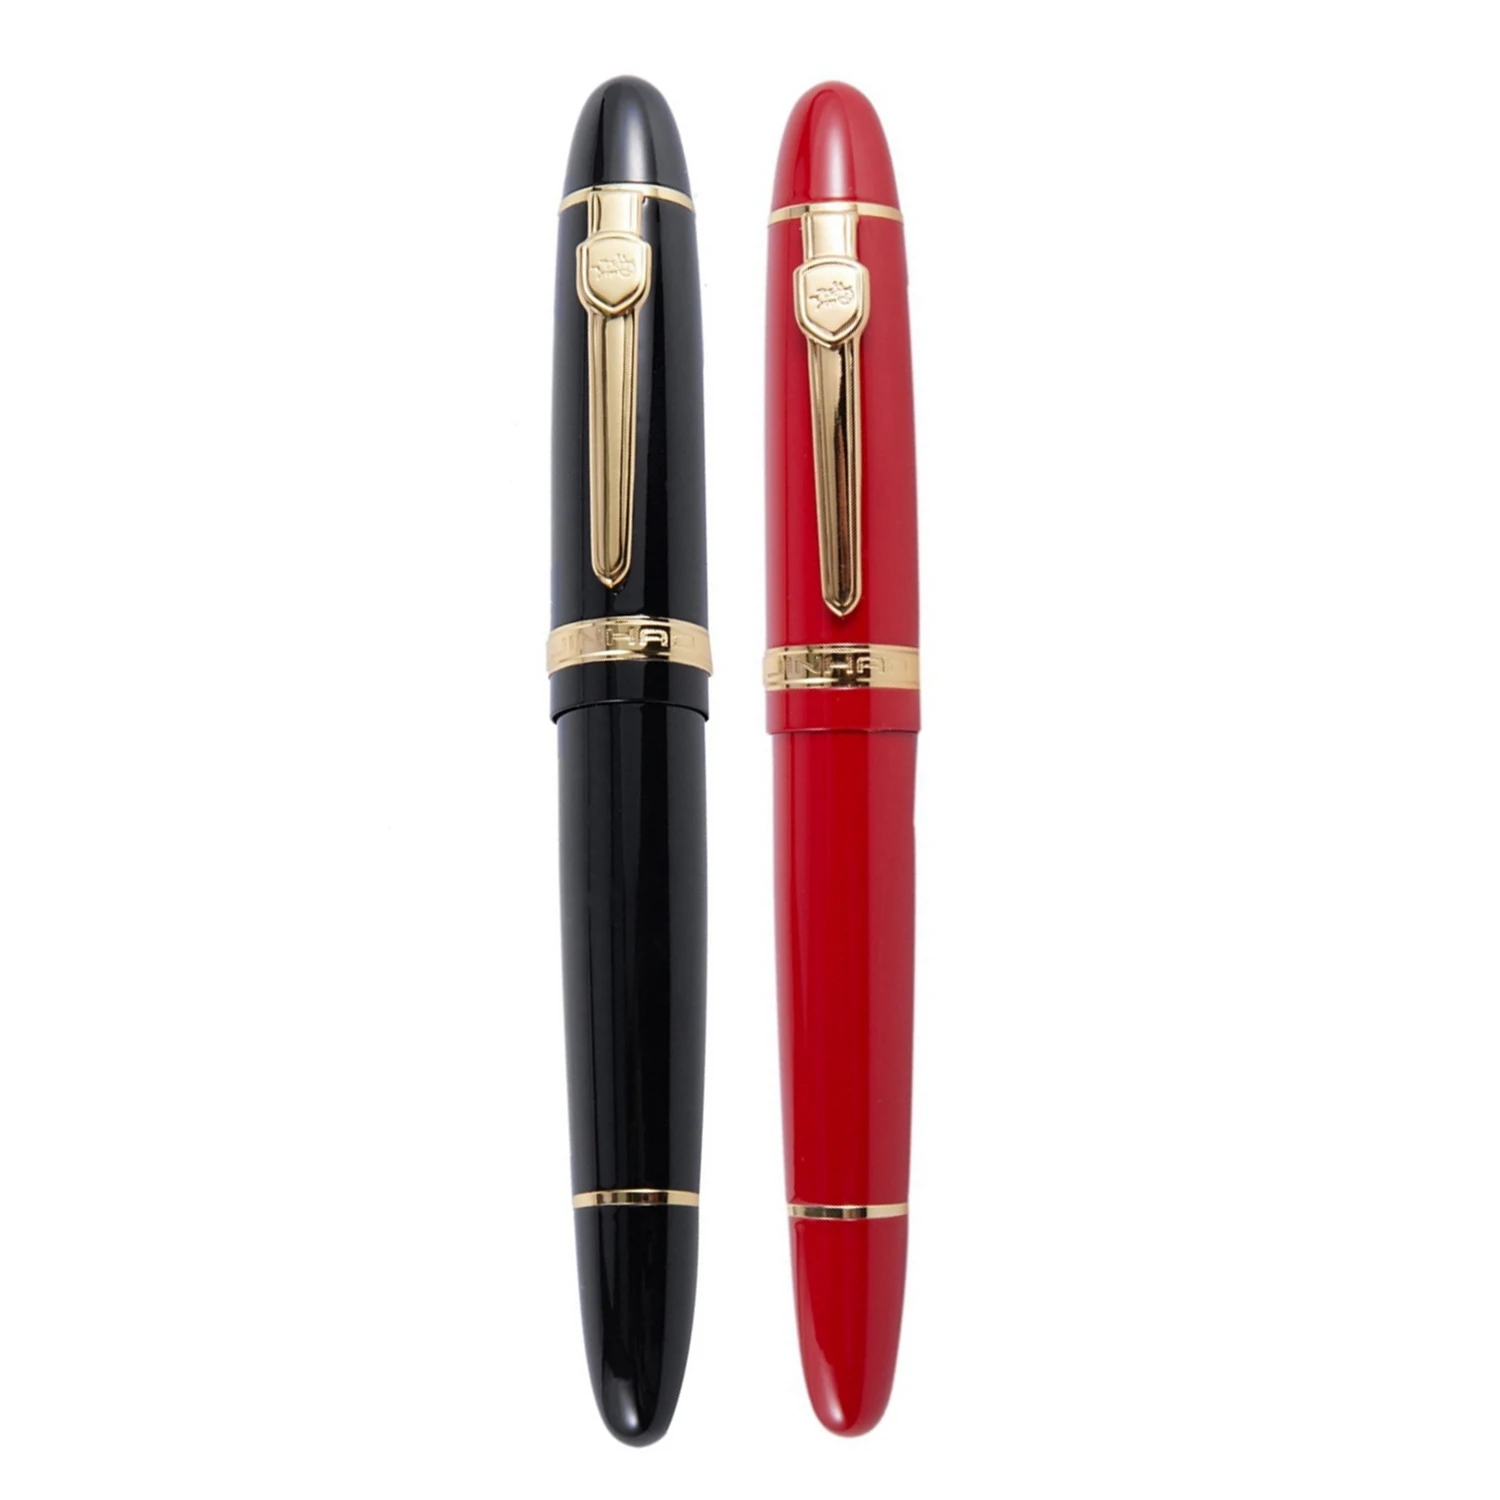 

Ручка перьевая JINHAO 159 18KGP, 0,7 мм, средняя, черная и красная